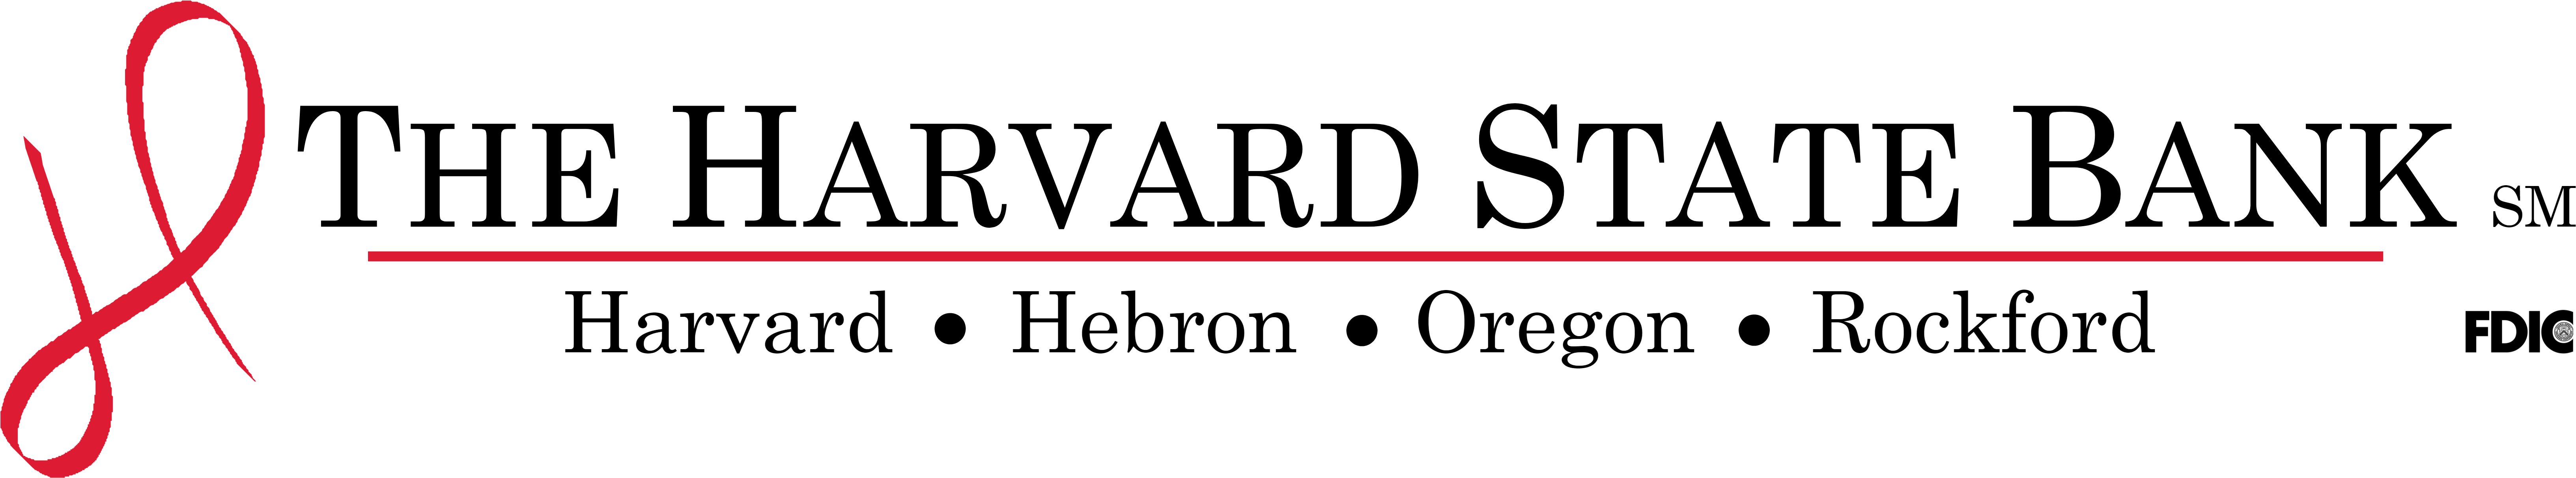 Bank Logo - Harvard State Bank Logo (7000x2200), Png Download